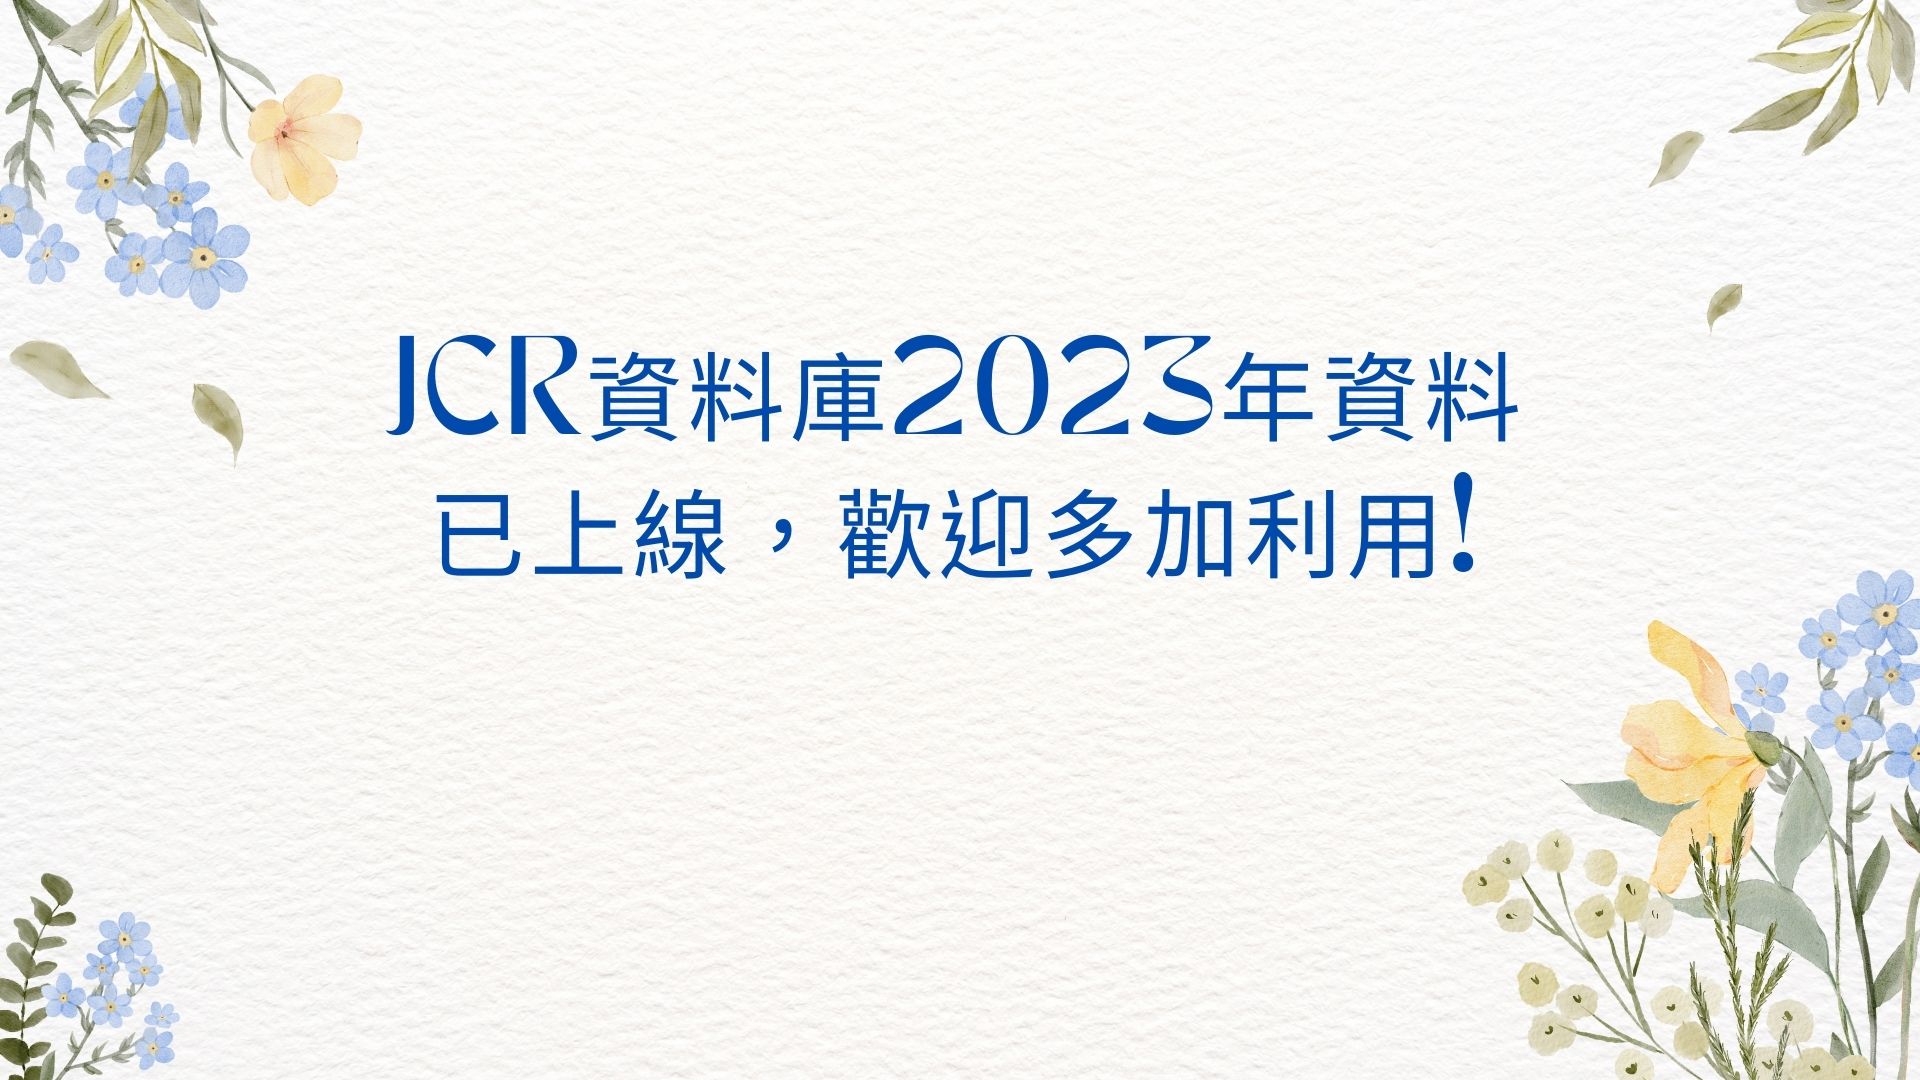 JCR資料庫2023年資料已上線，歡迎多加利用!
全球期刊評估指標資料庫-Journal Citation Reports (JCR) 已於2024/06/20發佈最新數據，資料已更新至2023年。
